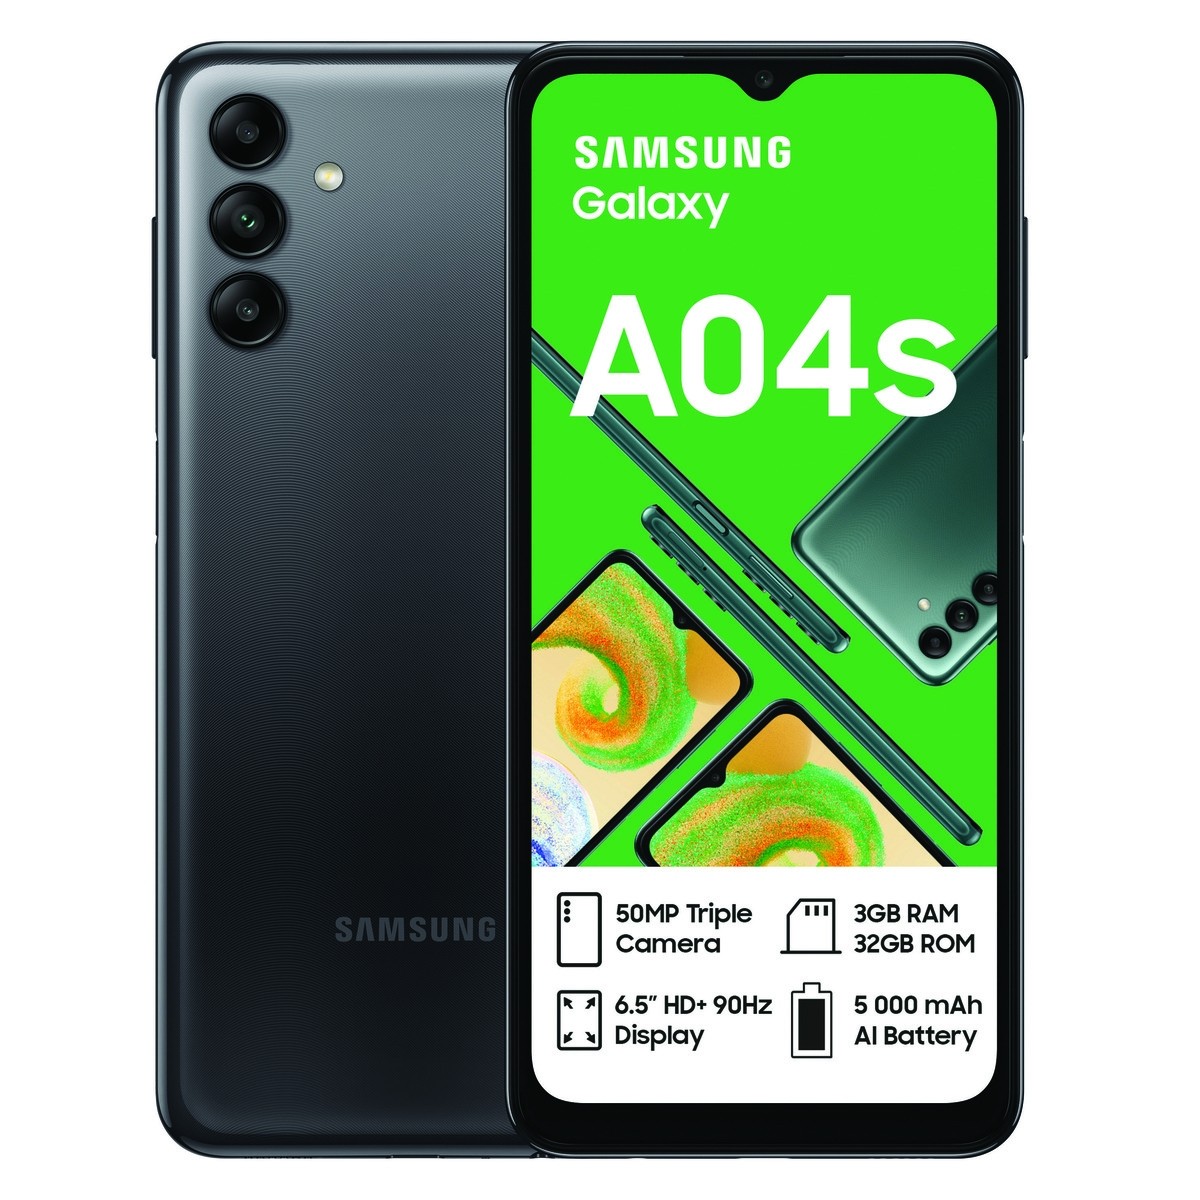 Samsung Galaxy A04s (Telkom)